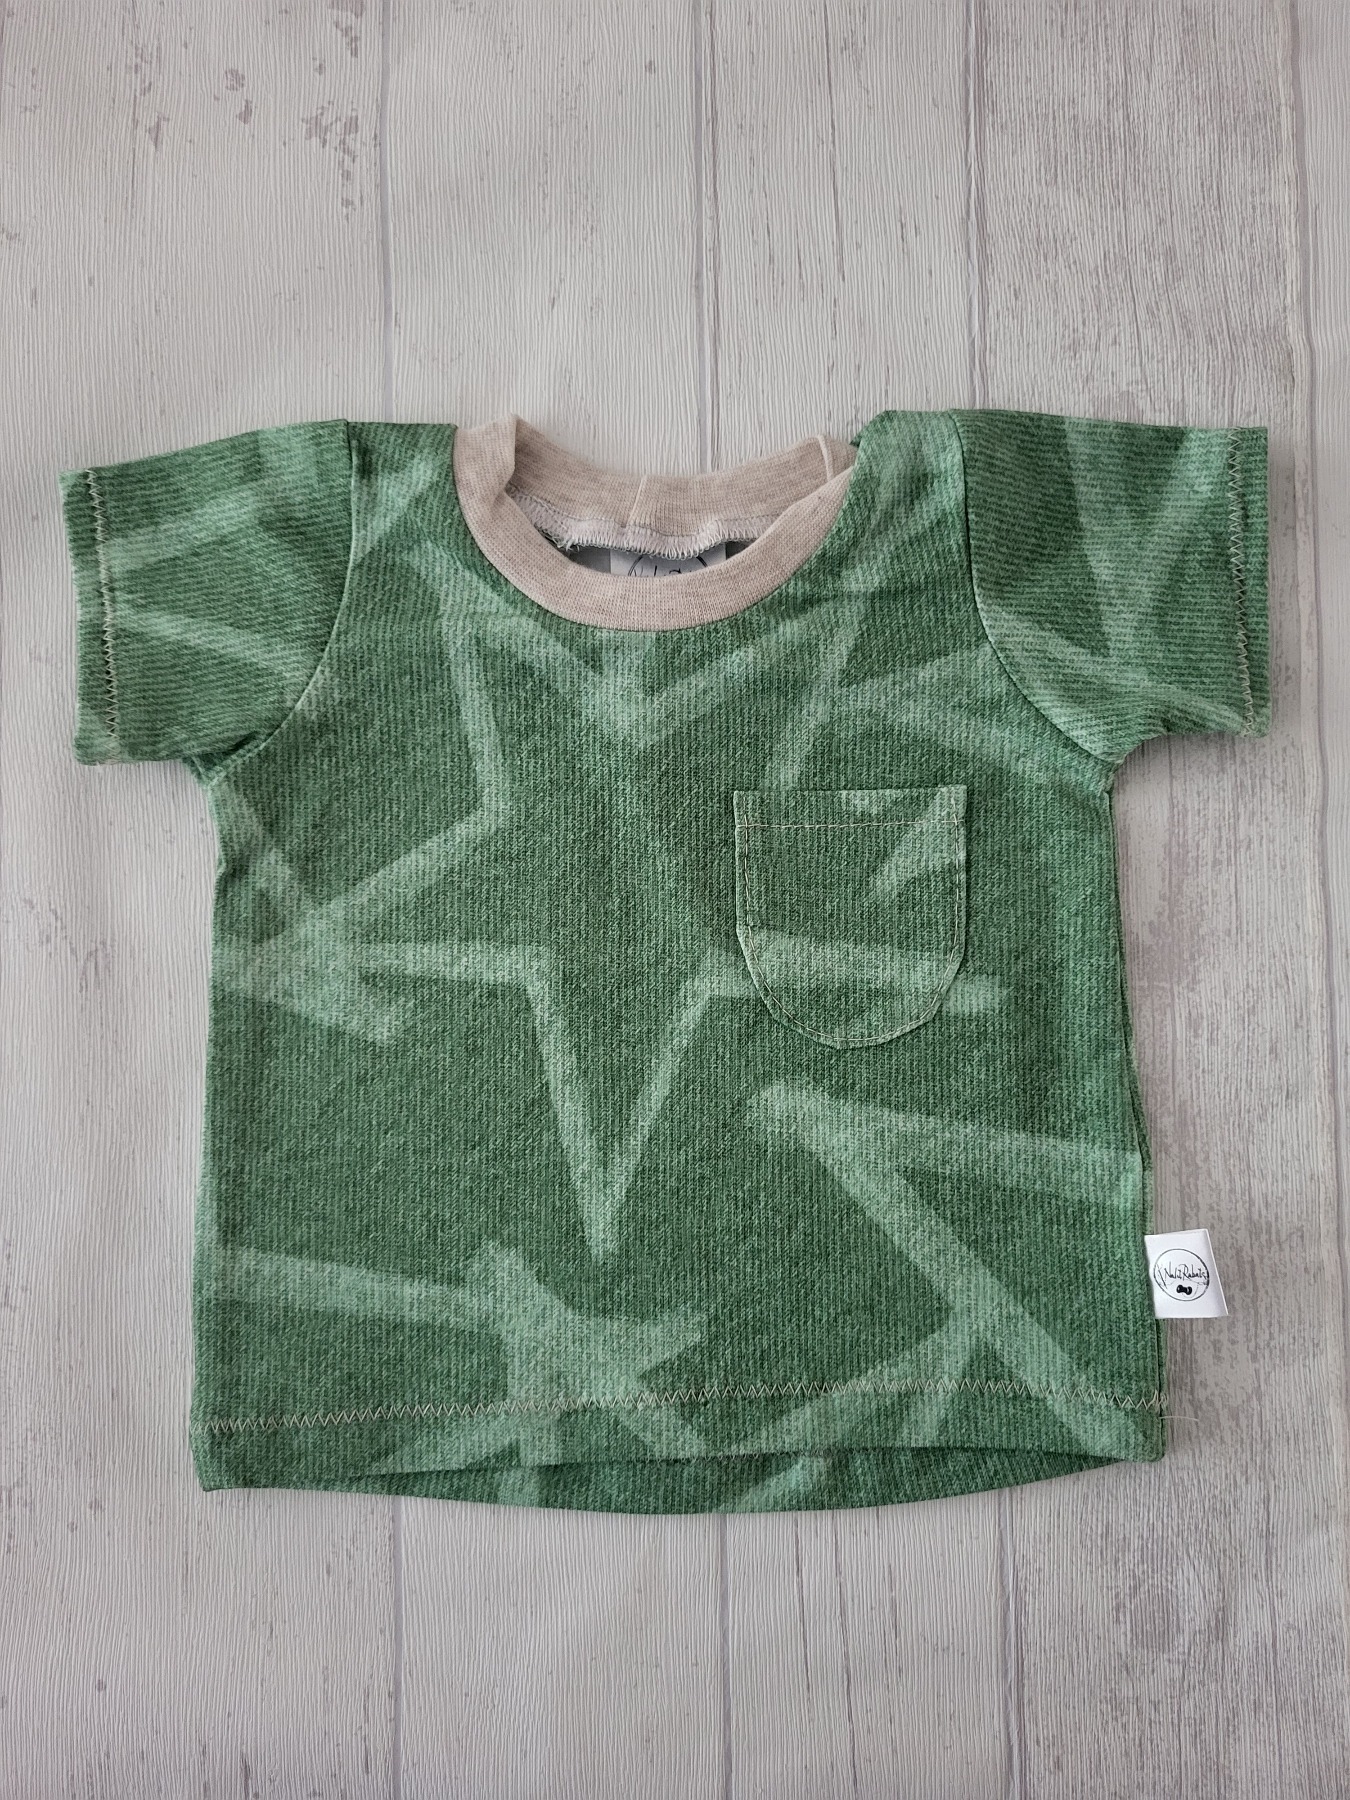 Sofortkauf Handmade T-Shirt kurzarm Sterne grün Gr. 62 von NahtRabatz